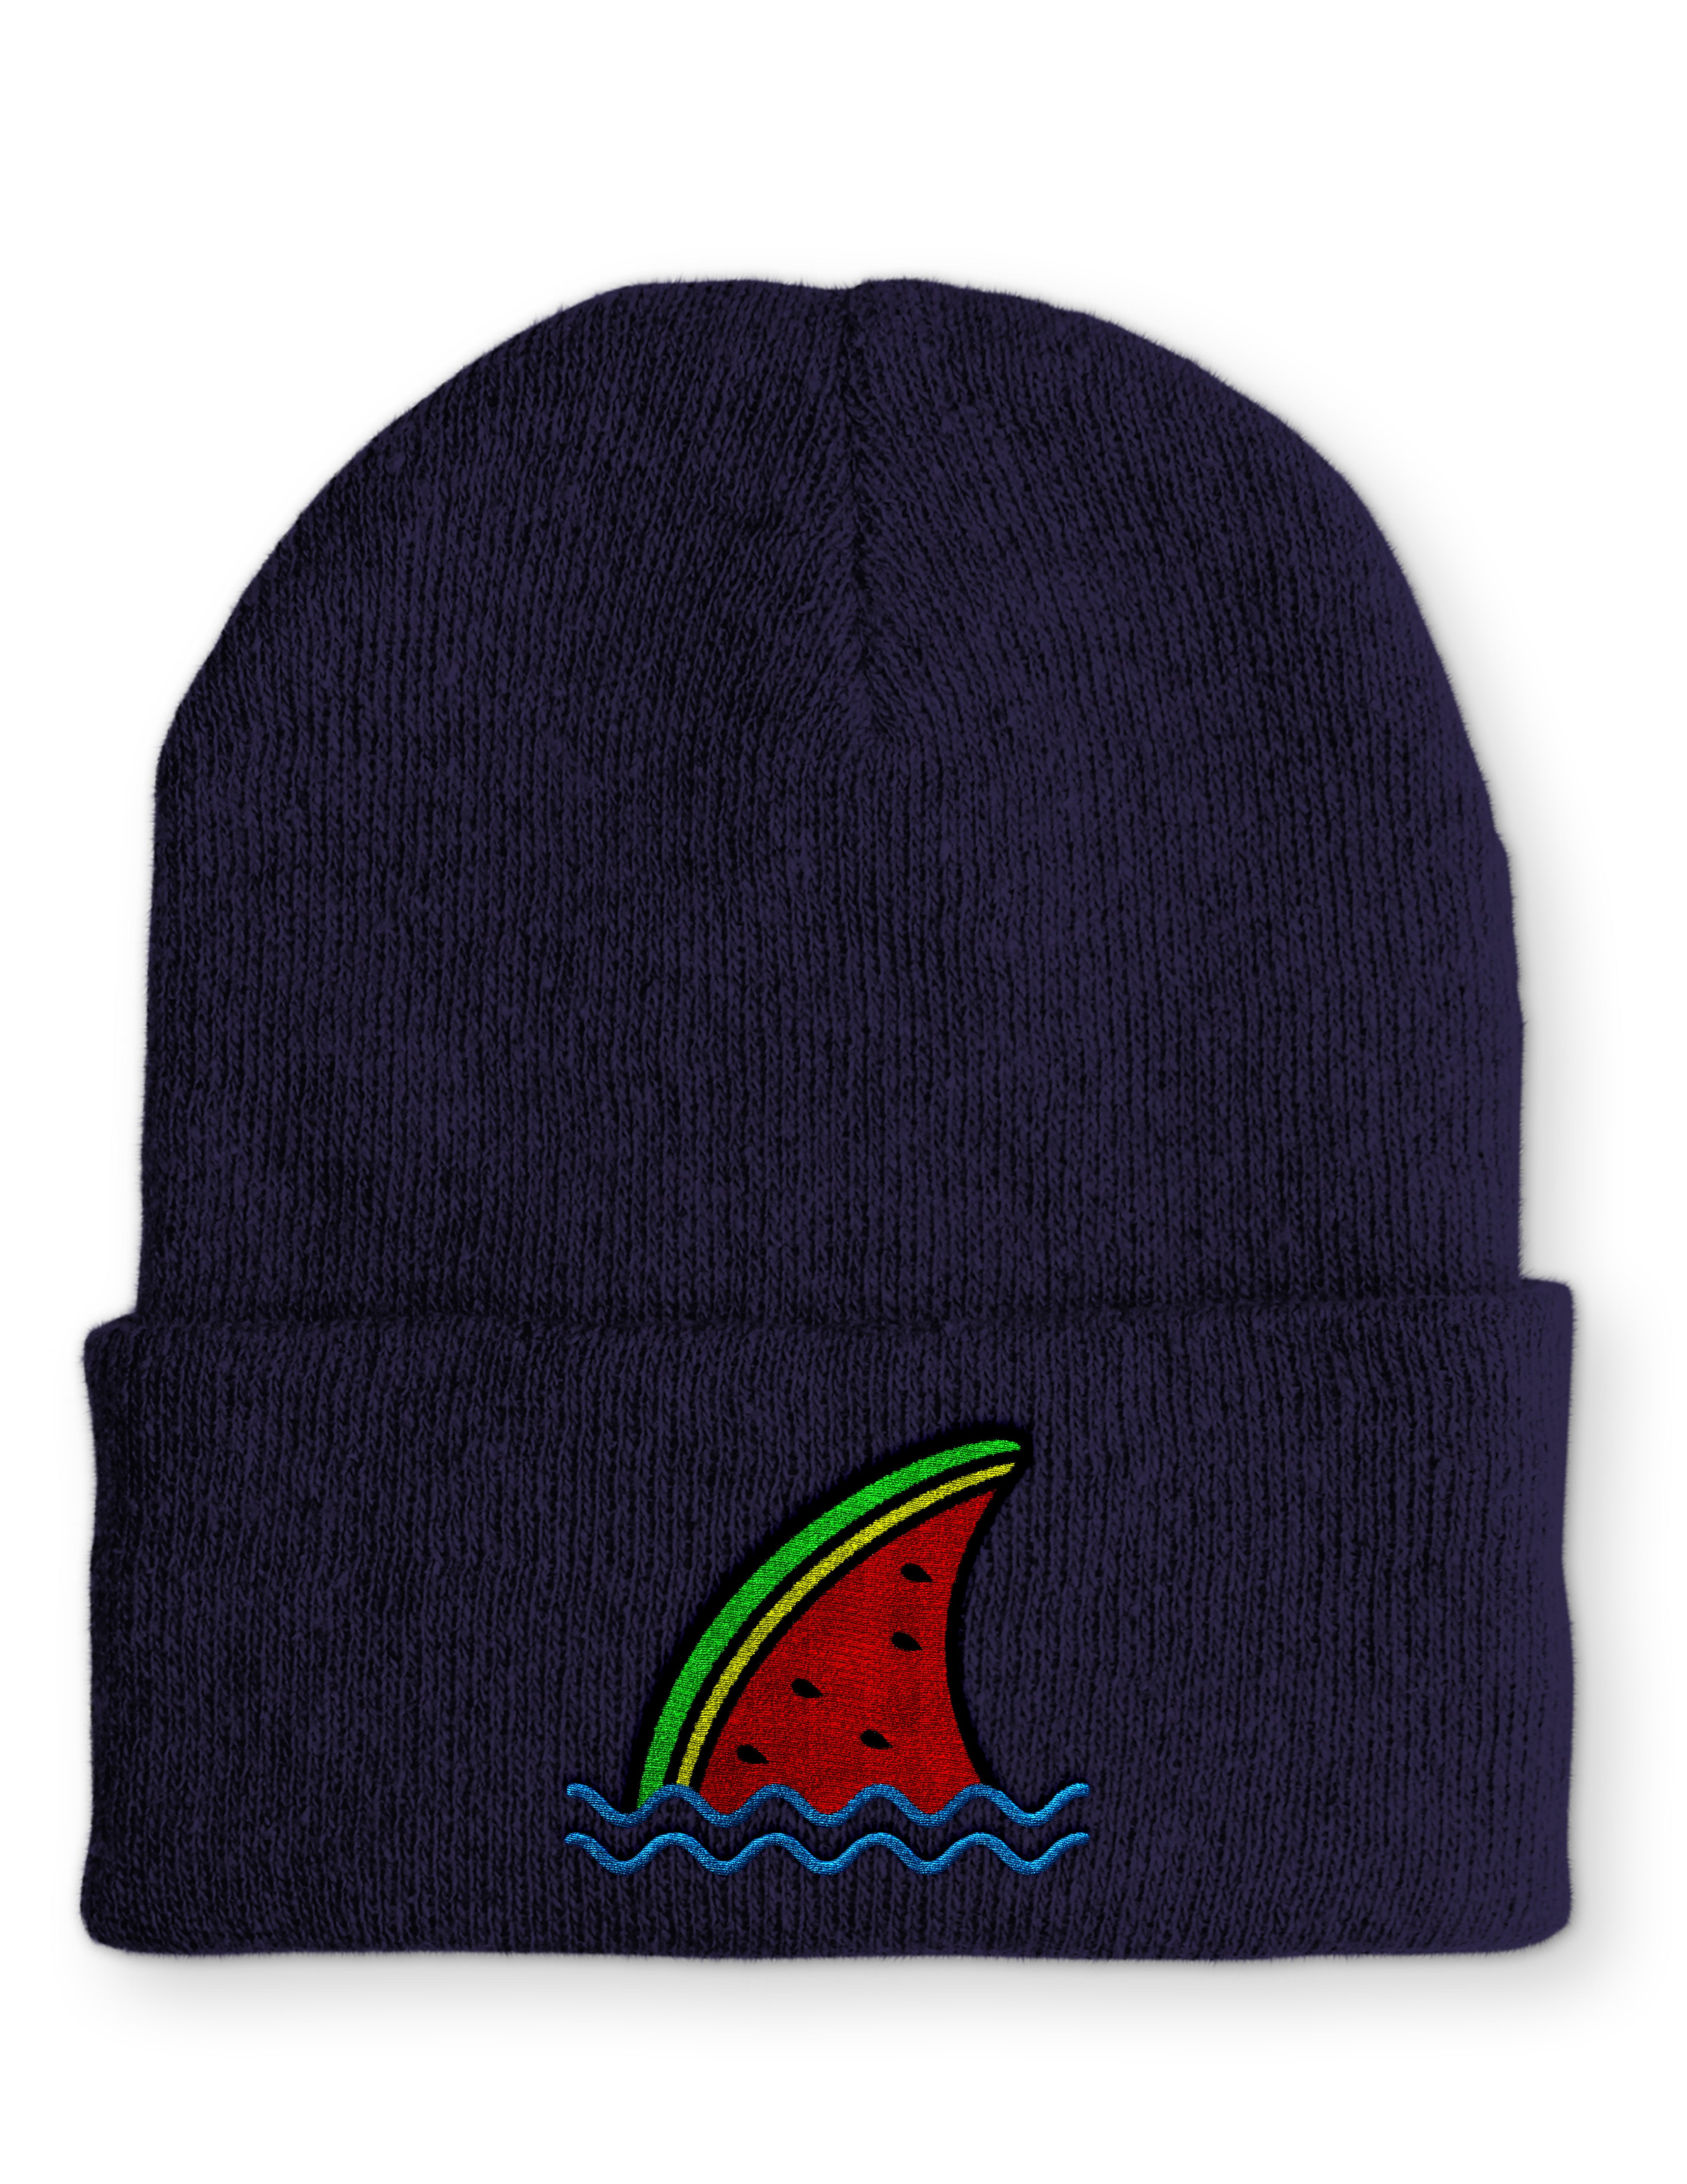 Mütze Haifisch Flosse Melone